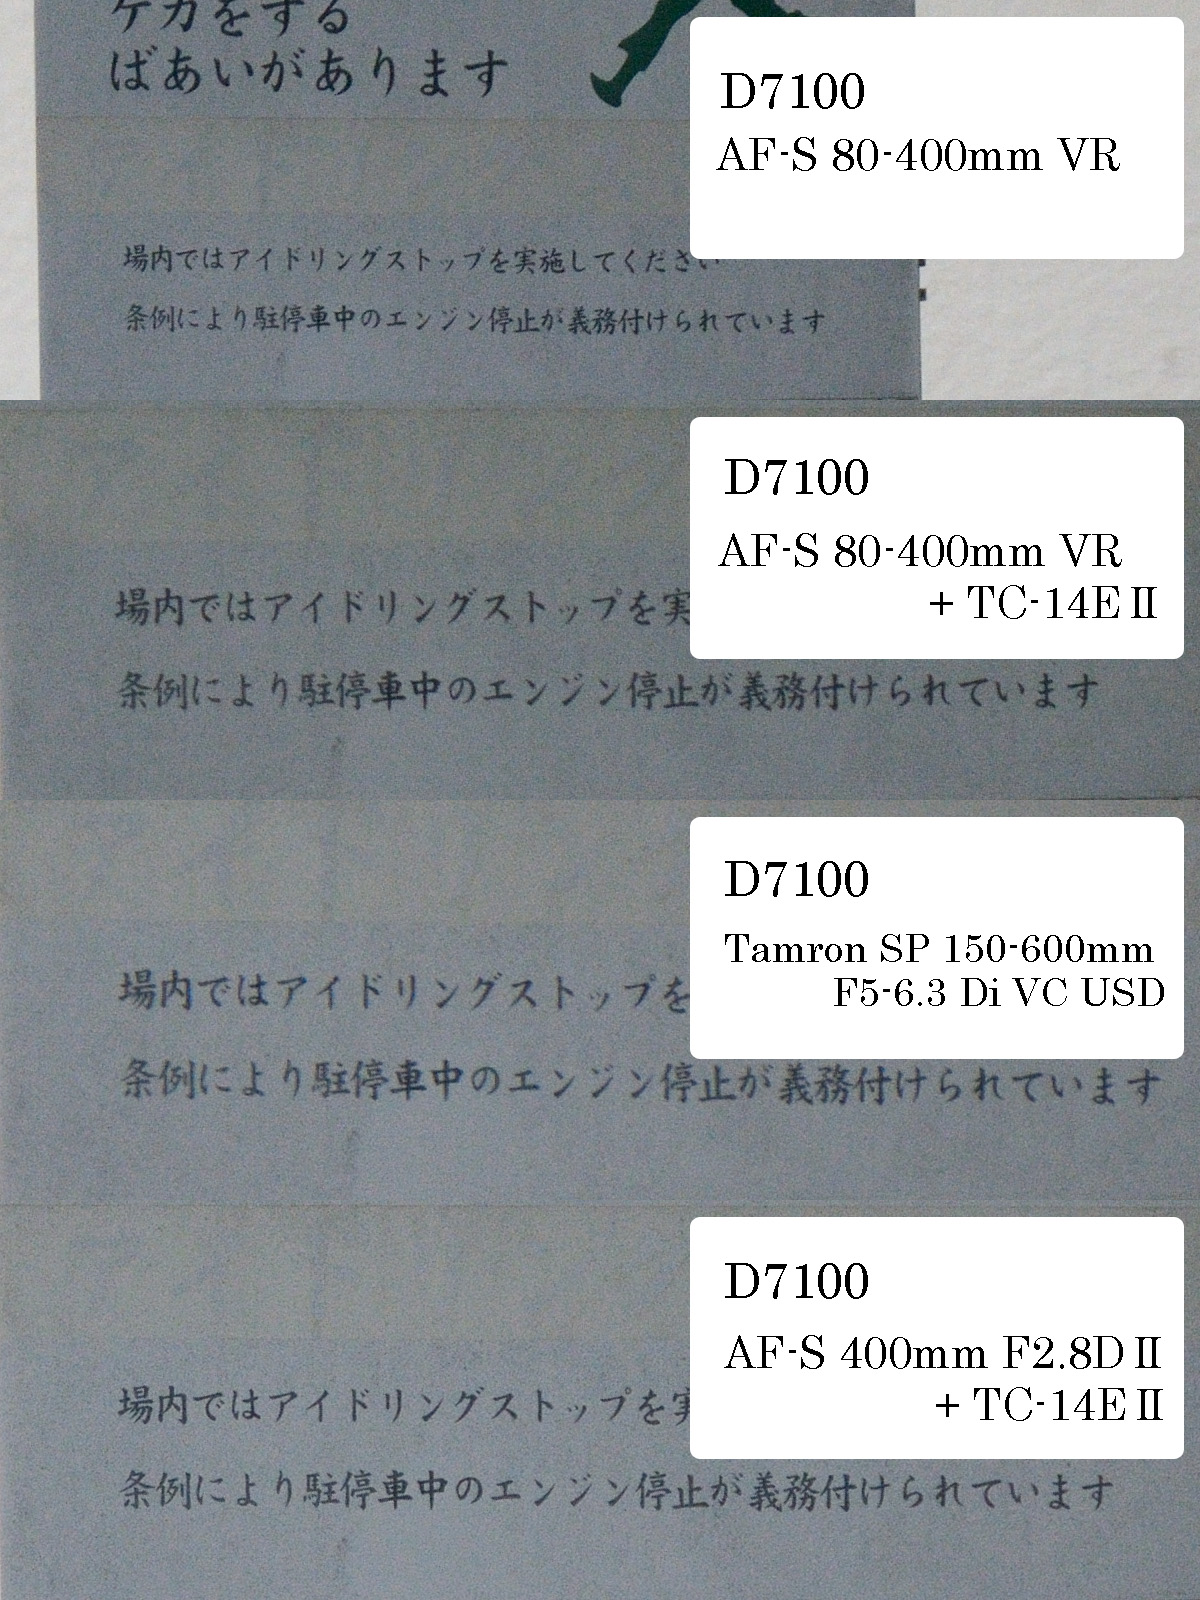 タムロン 150-600mm VS. ニコン AF-S 80-400mm VR 解像力チェック